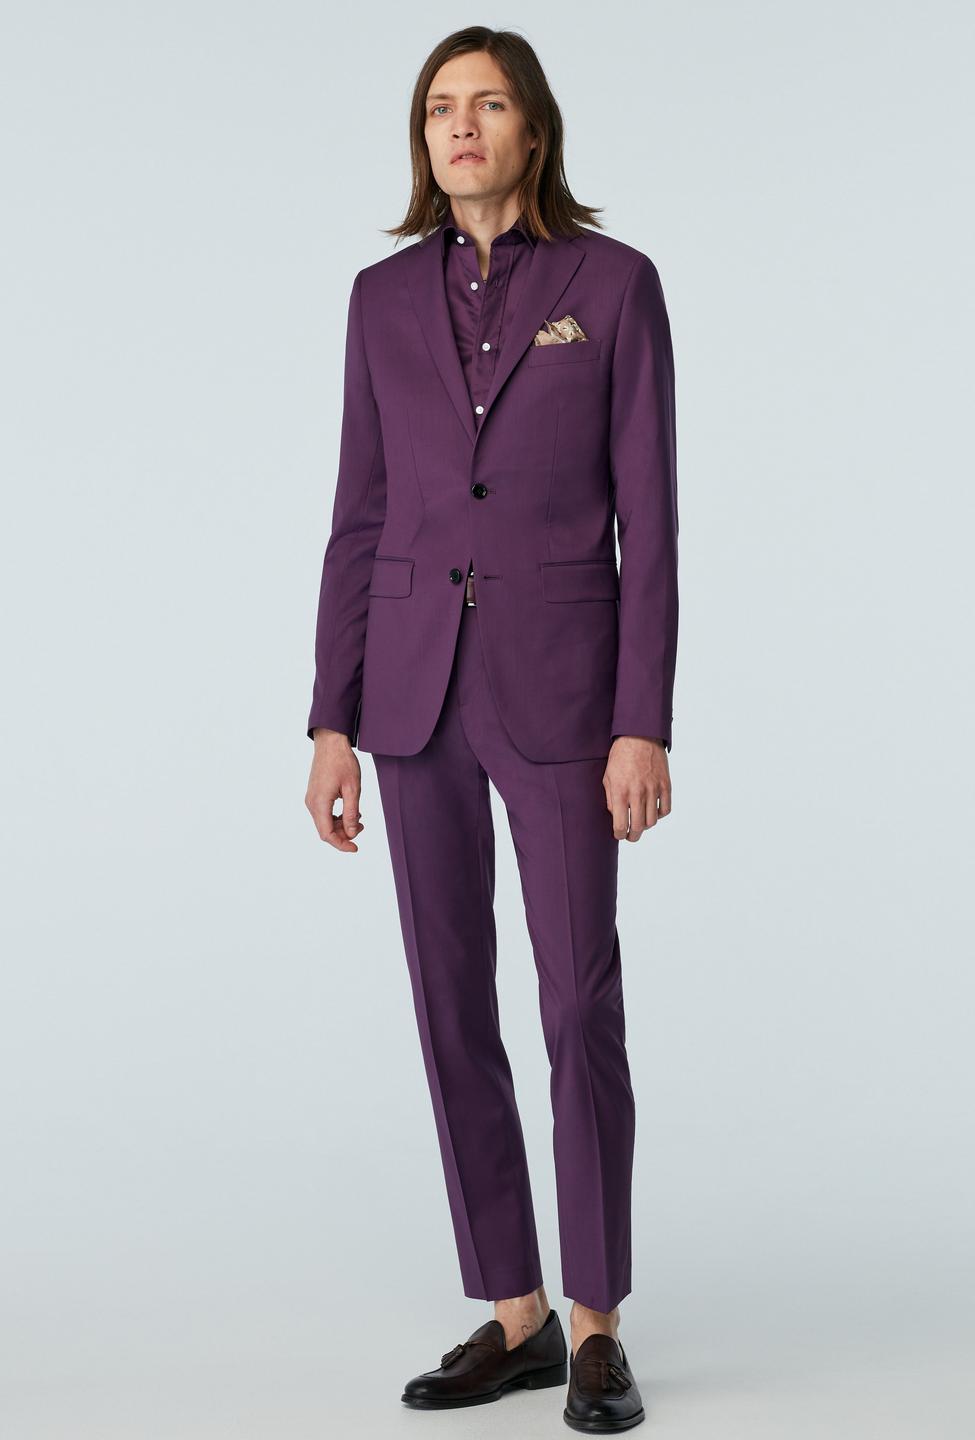 Milano Plum Suit